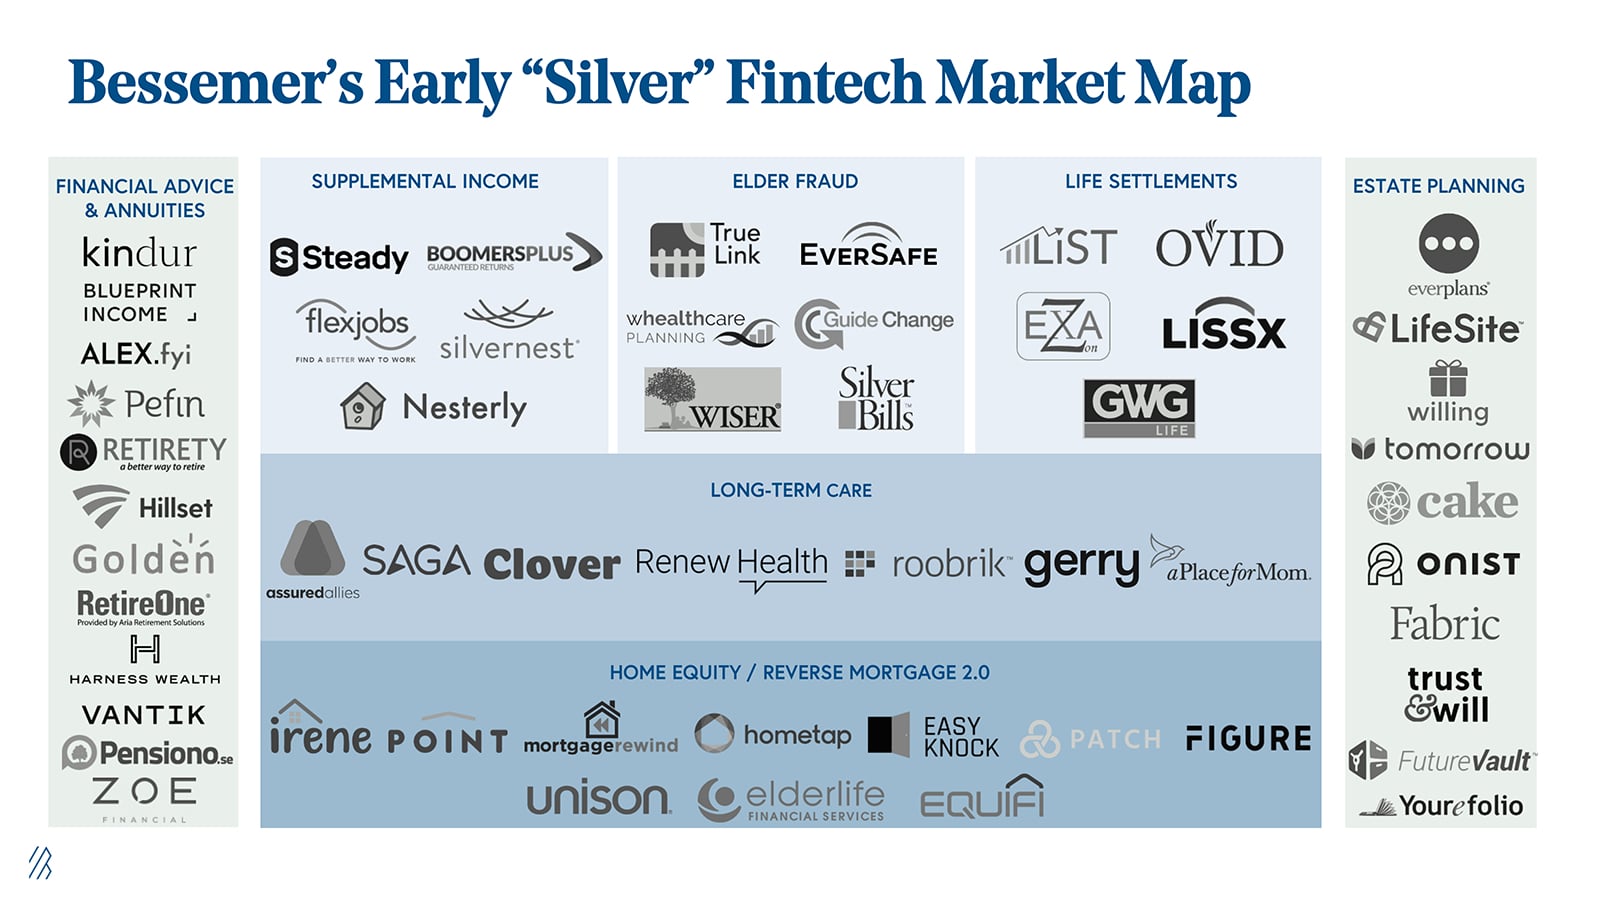 Bessemer's Early "Silver" Fintech Market Map 